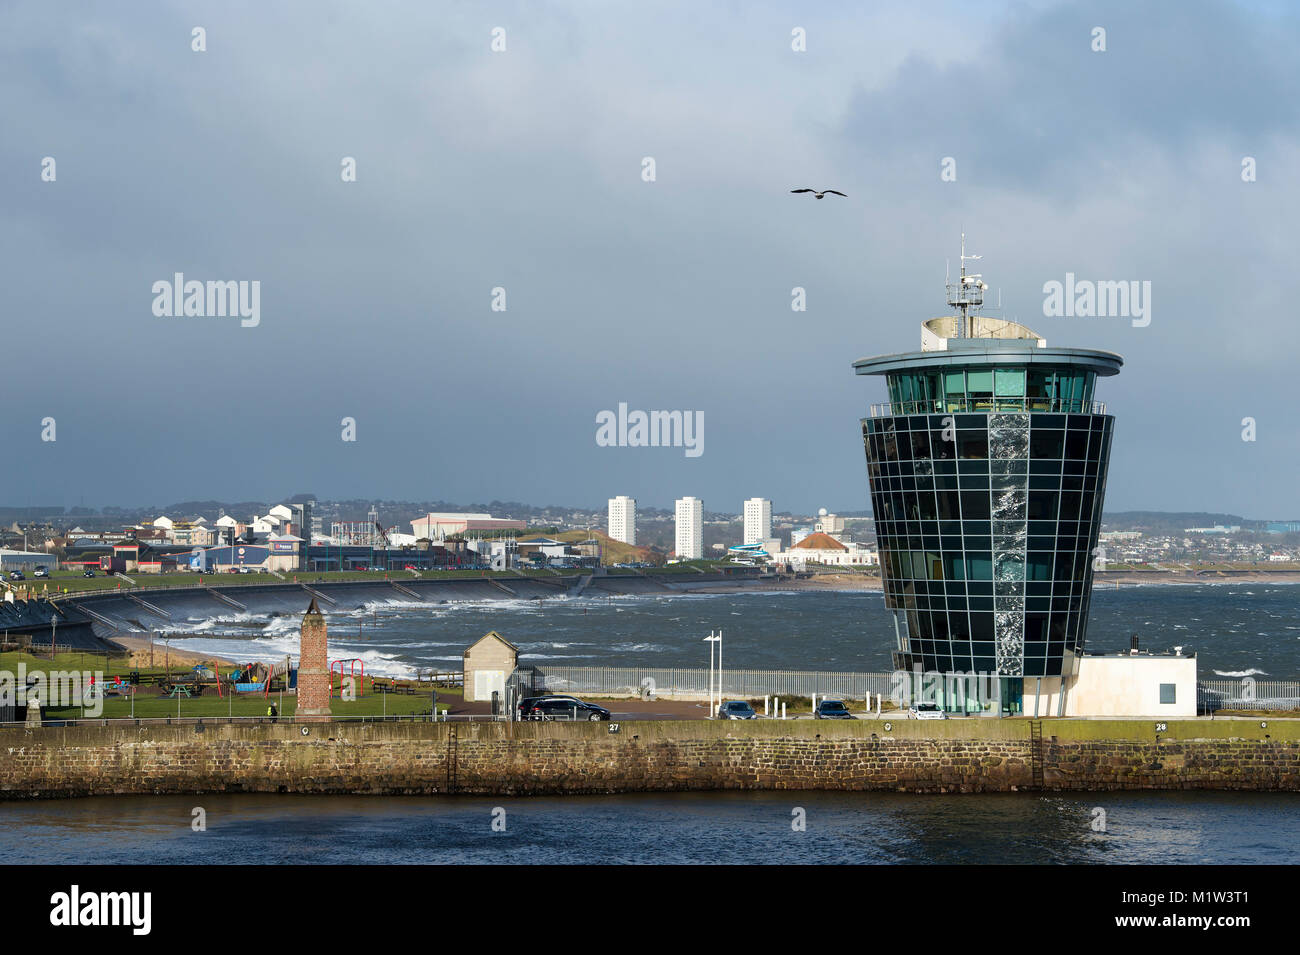 Hafen des Meisters Kontrollturm am Eingang zum Hafen mit Strand an der Nordseeküste. Aberdeen, Aberdeenshire, Schottland, Großbritannien. Stockfoto